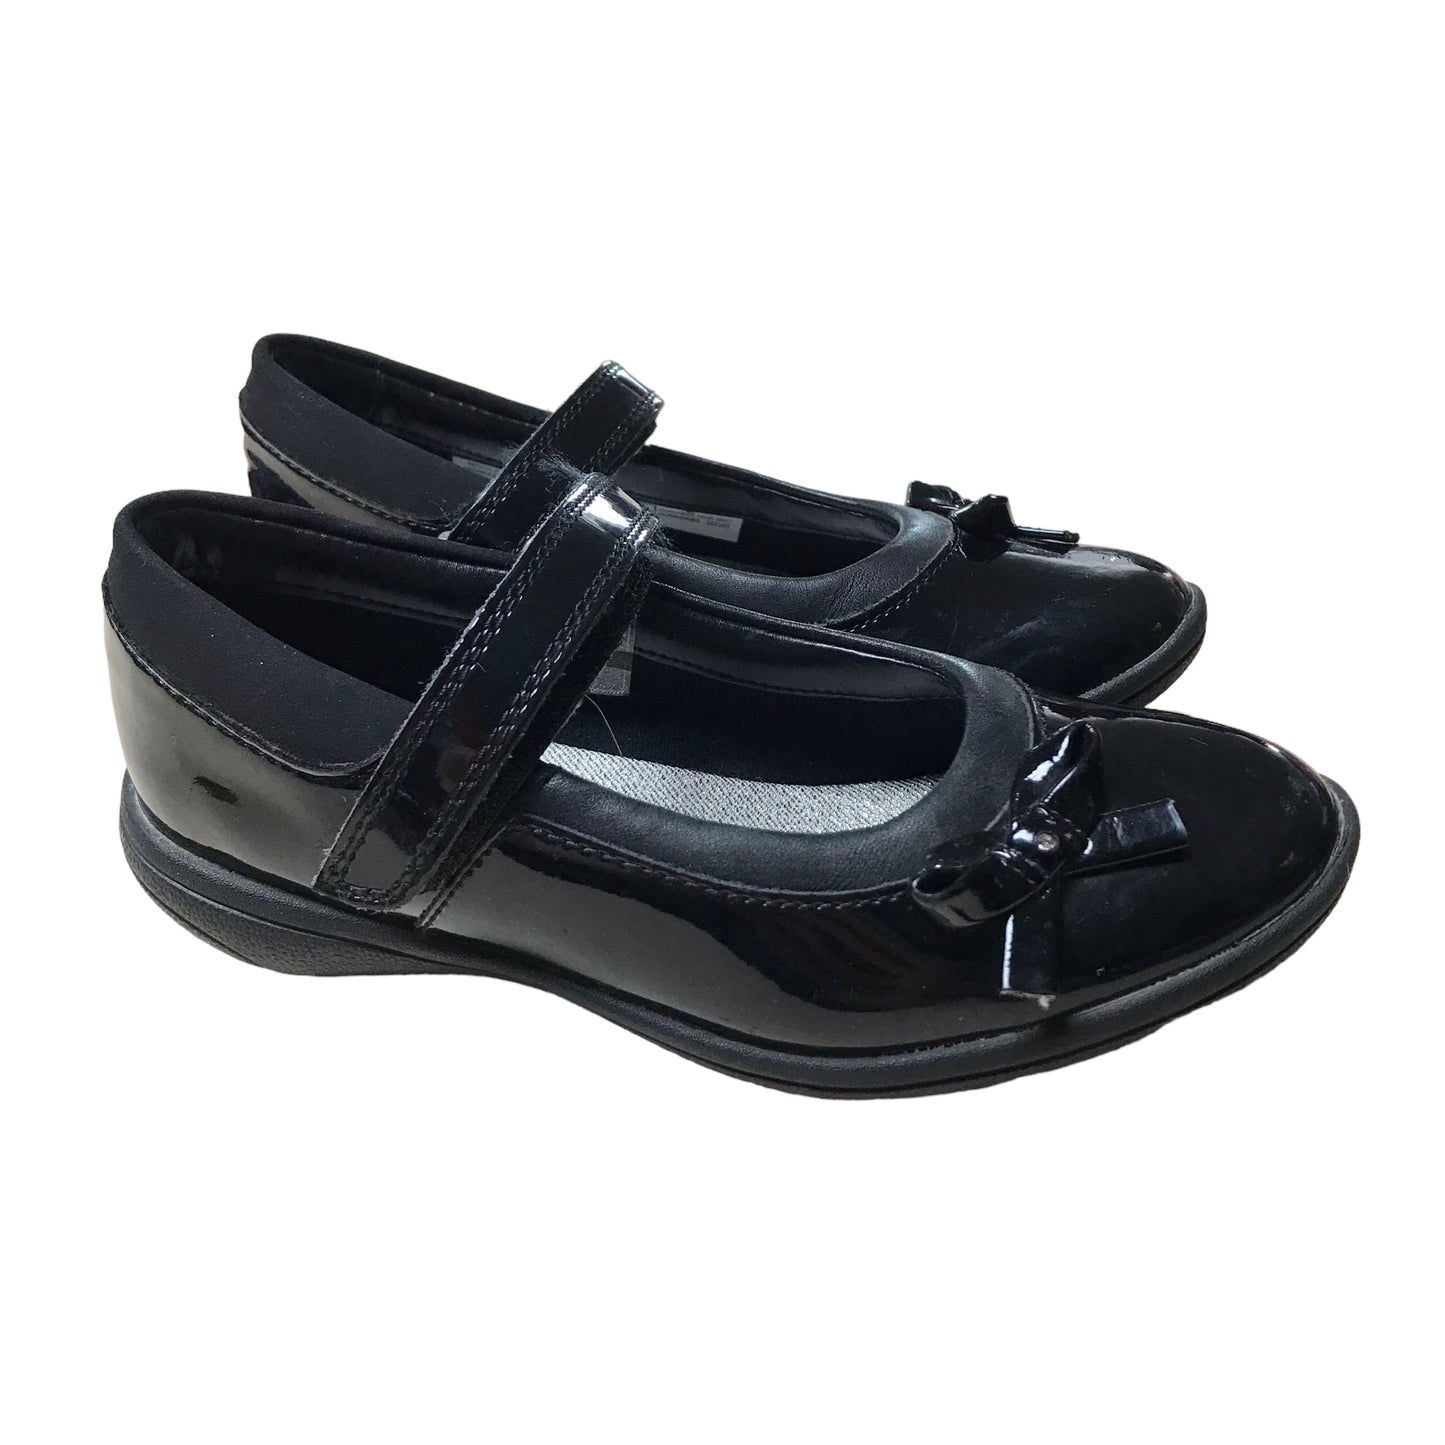 Clarks Black Bowtie School Shoes Shoe Size 11F junior